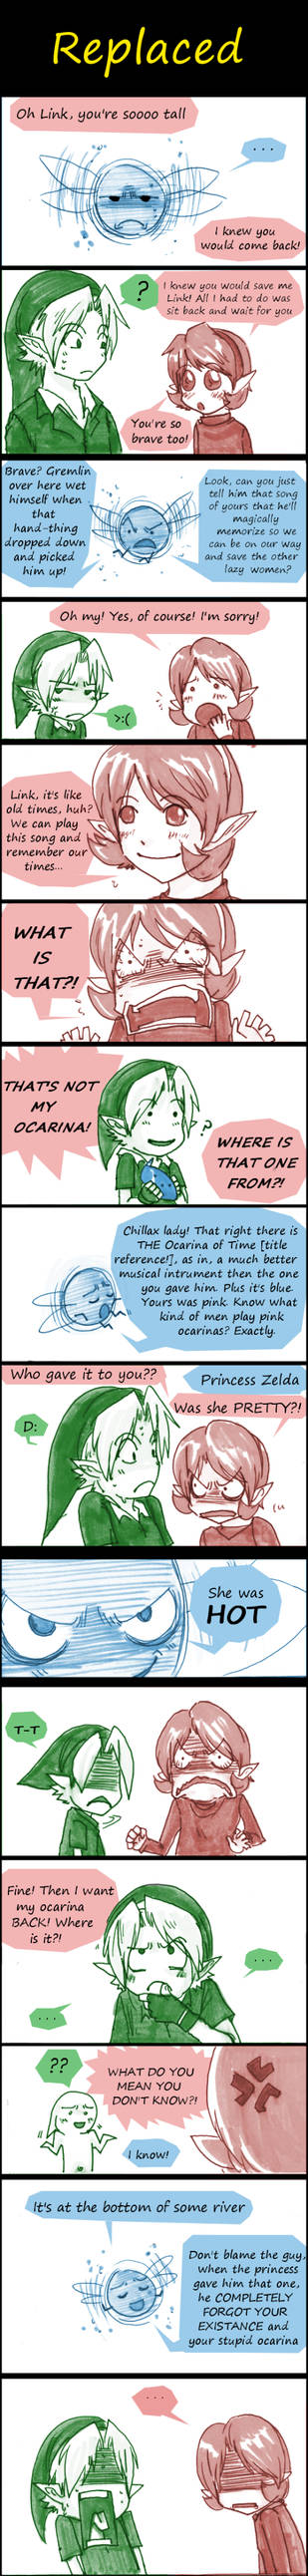 Zelda: Replaced